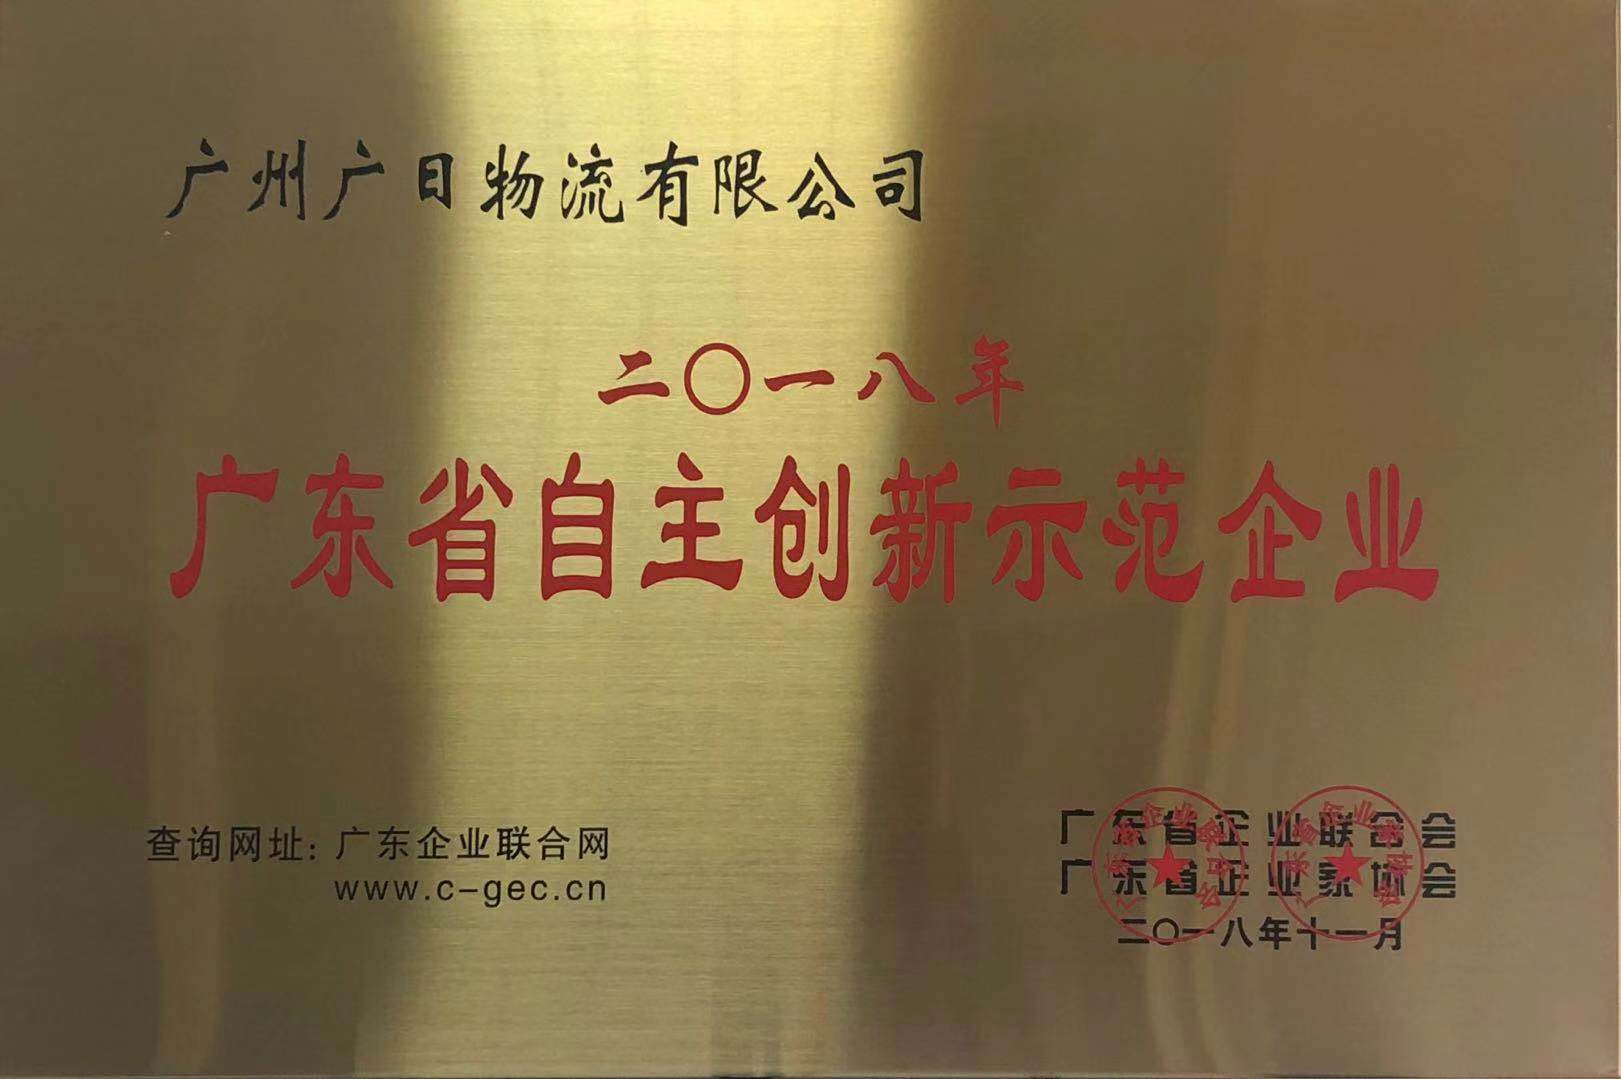 广日物流荣获“2018年度广东省自主创新示范企业” 称号